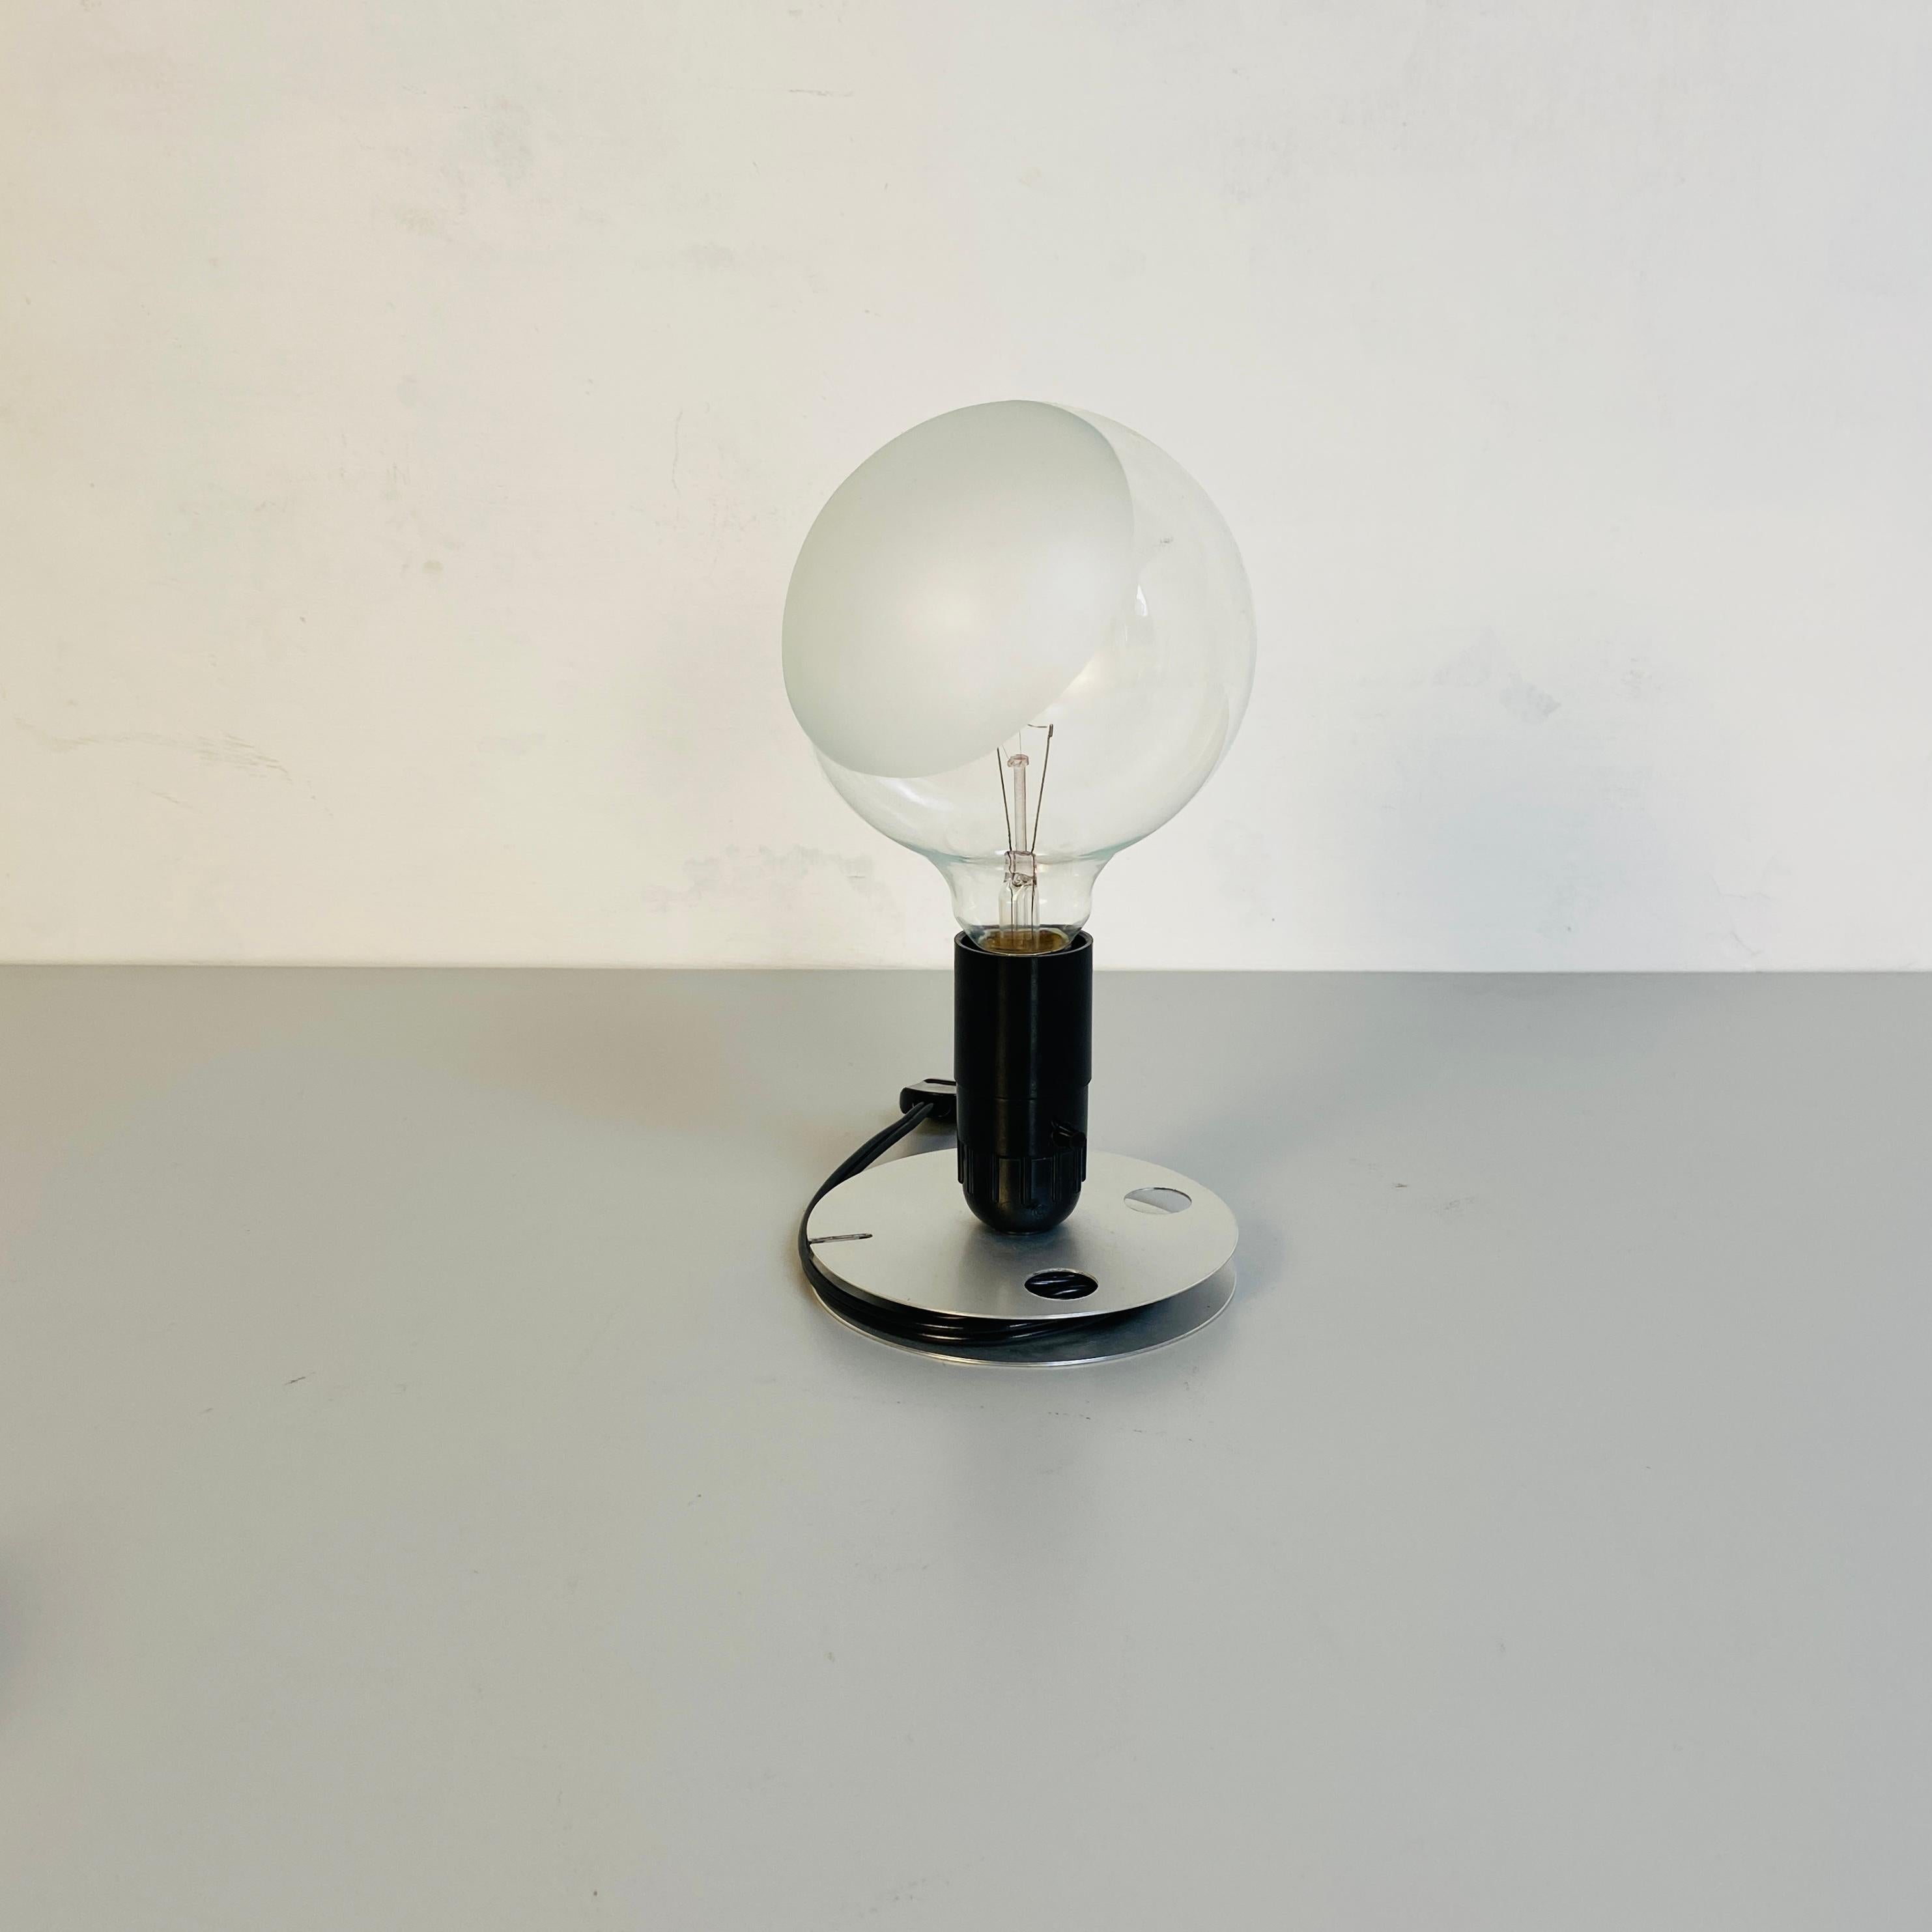 Lampe de table italienne moderne du milieu du siècle Lampadina d'Achille Castiglioni pour Flos, 1972
Lampe de table Lampadina à lumière directe et diffuse avec base en aluminium anodisé avec fonction de rembobinage du câble électrique.